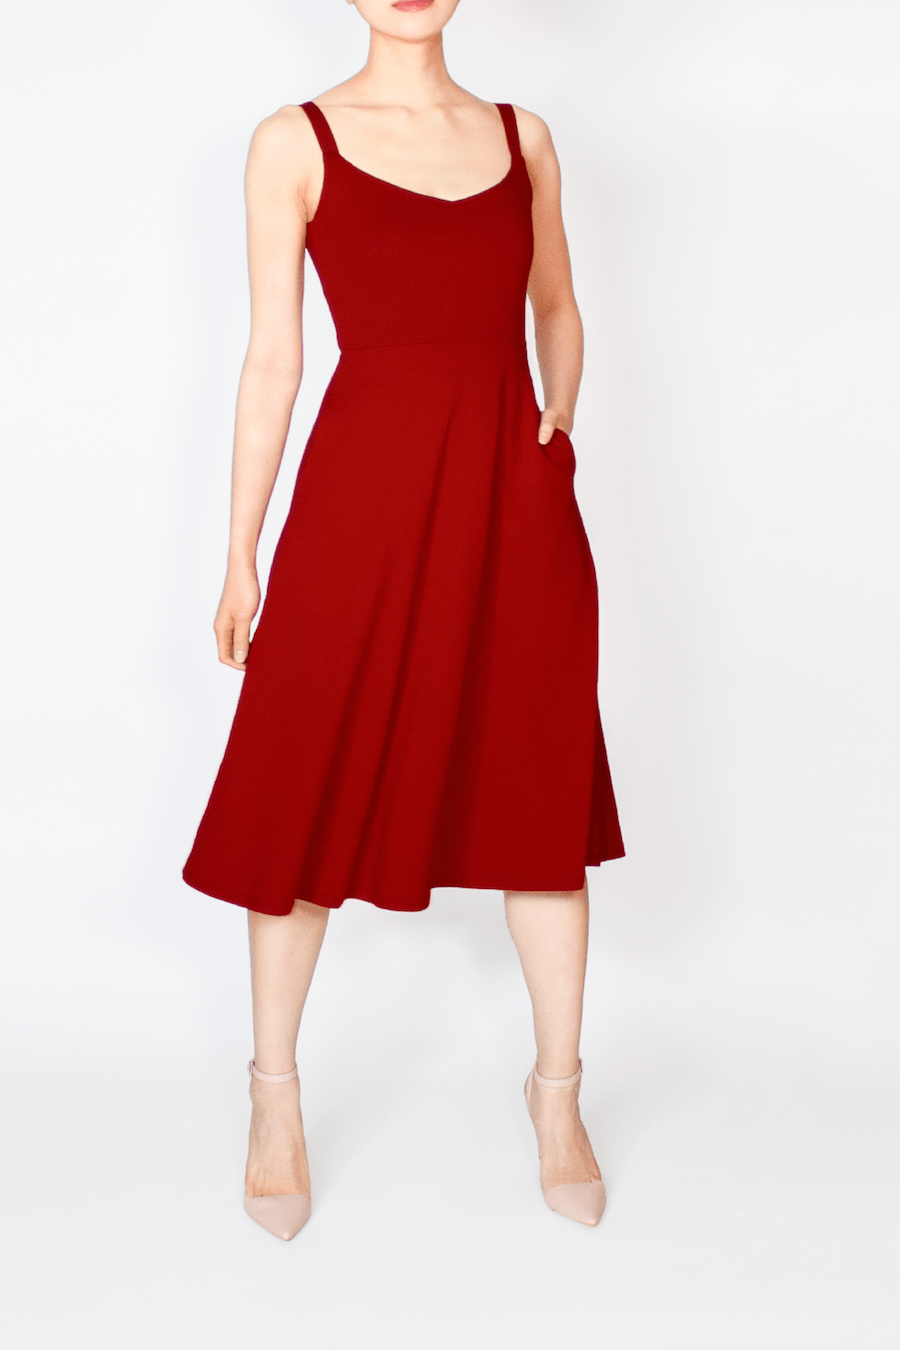 Mabel Red Ditsy Print Cotton Midi Dress – L'Atelier London